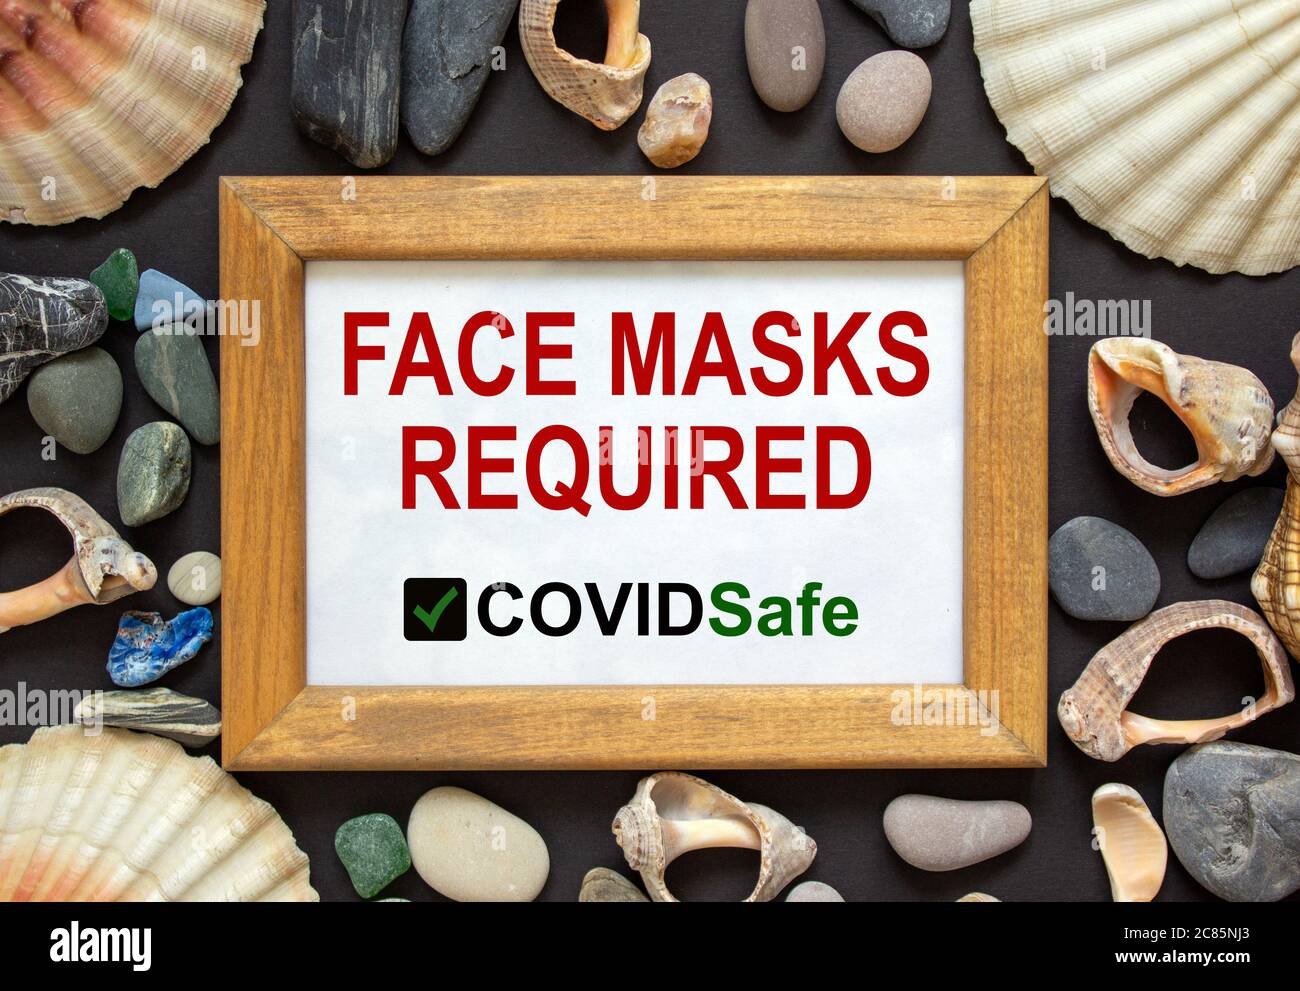 Holzbildrahmen mit Aufschrift "Gesichtsmasken erforderlich covid sicher" auf schönem schwarzen Hintergrund. Seesteine und Muscheln. Konzept. Stockfoto